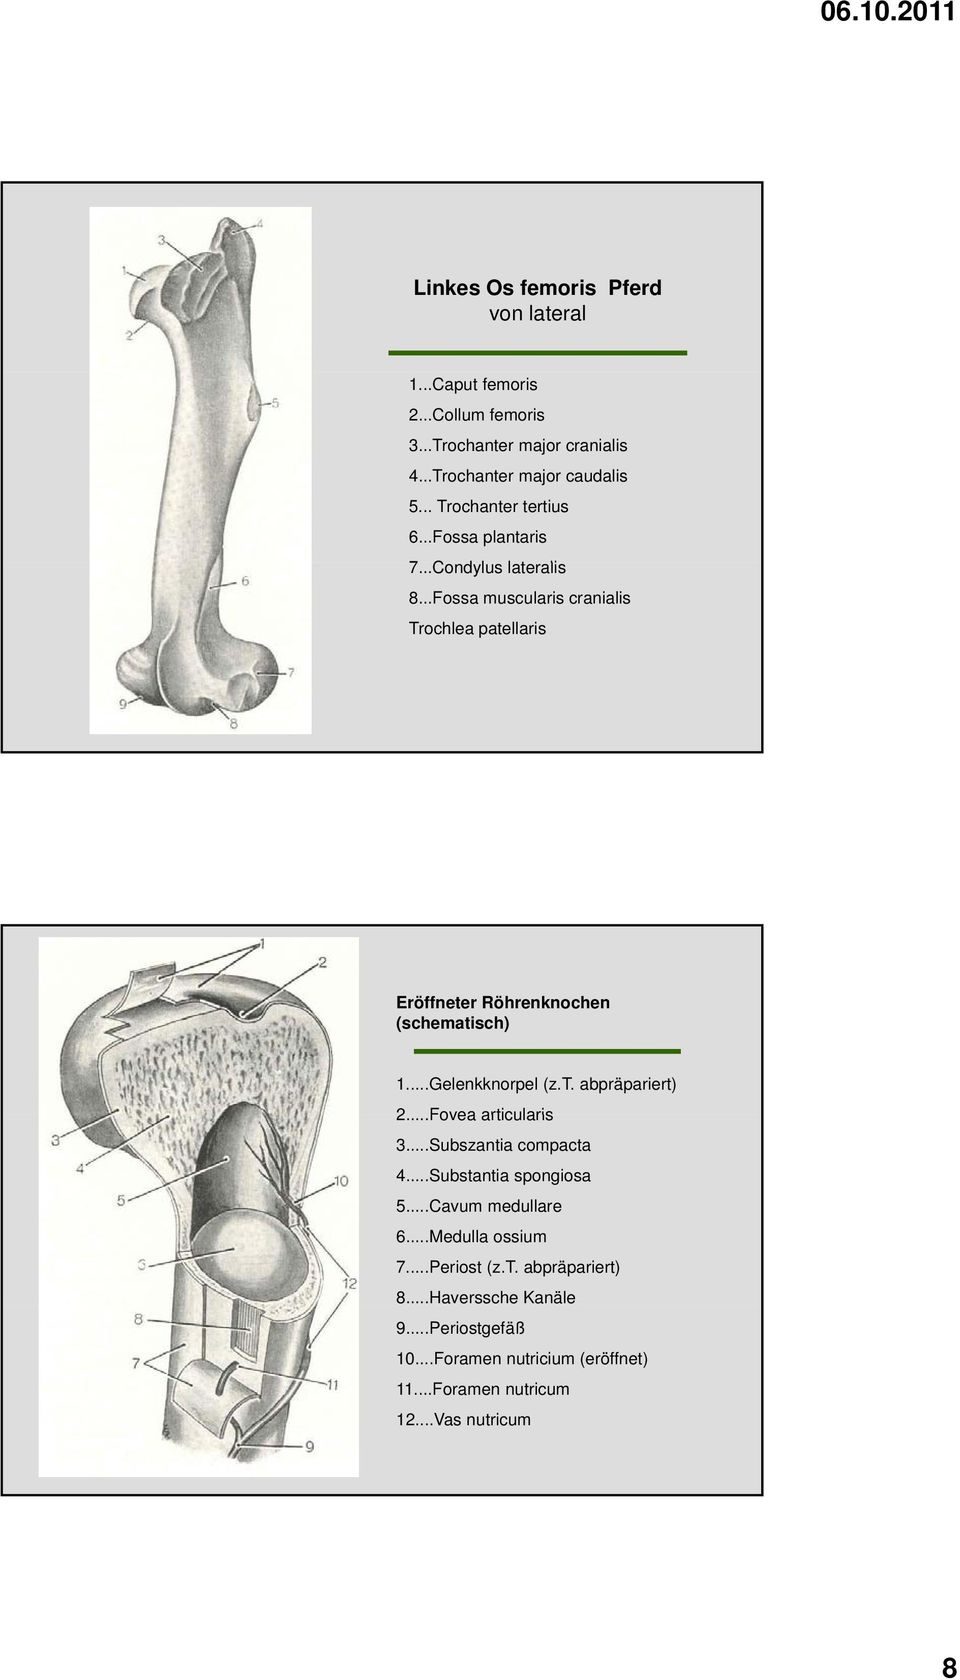 ..Fossa muscularis cranialis Trochlea patellaris Eröffneter Röhrenknochen (schematisch) 1...Gelenkknorpel (z.t. abpräpariert) 2.